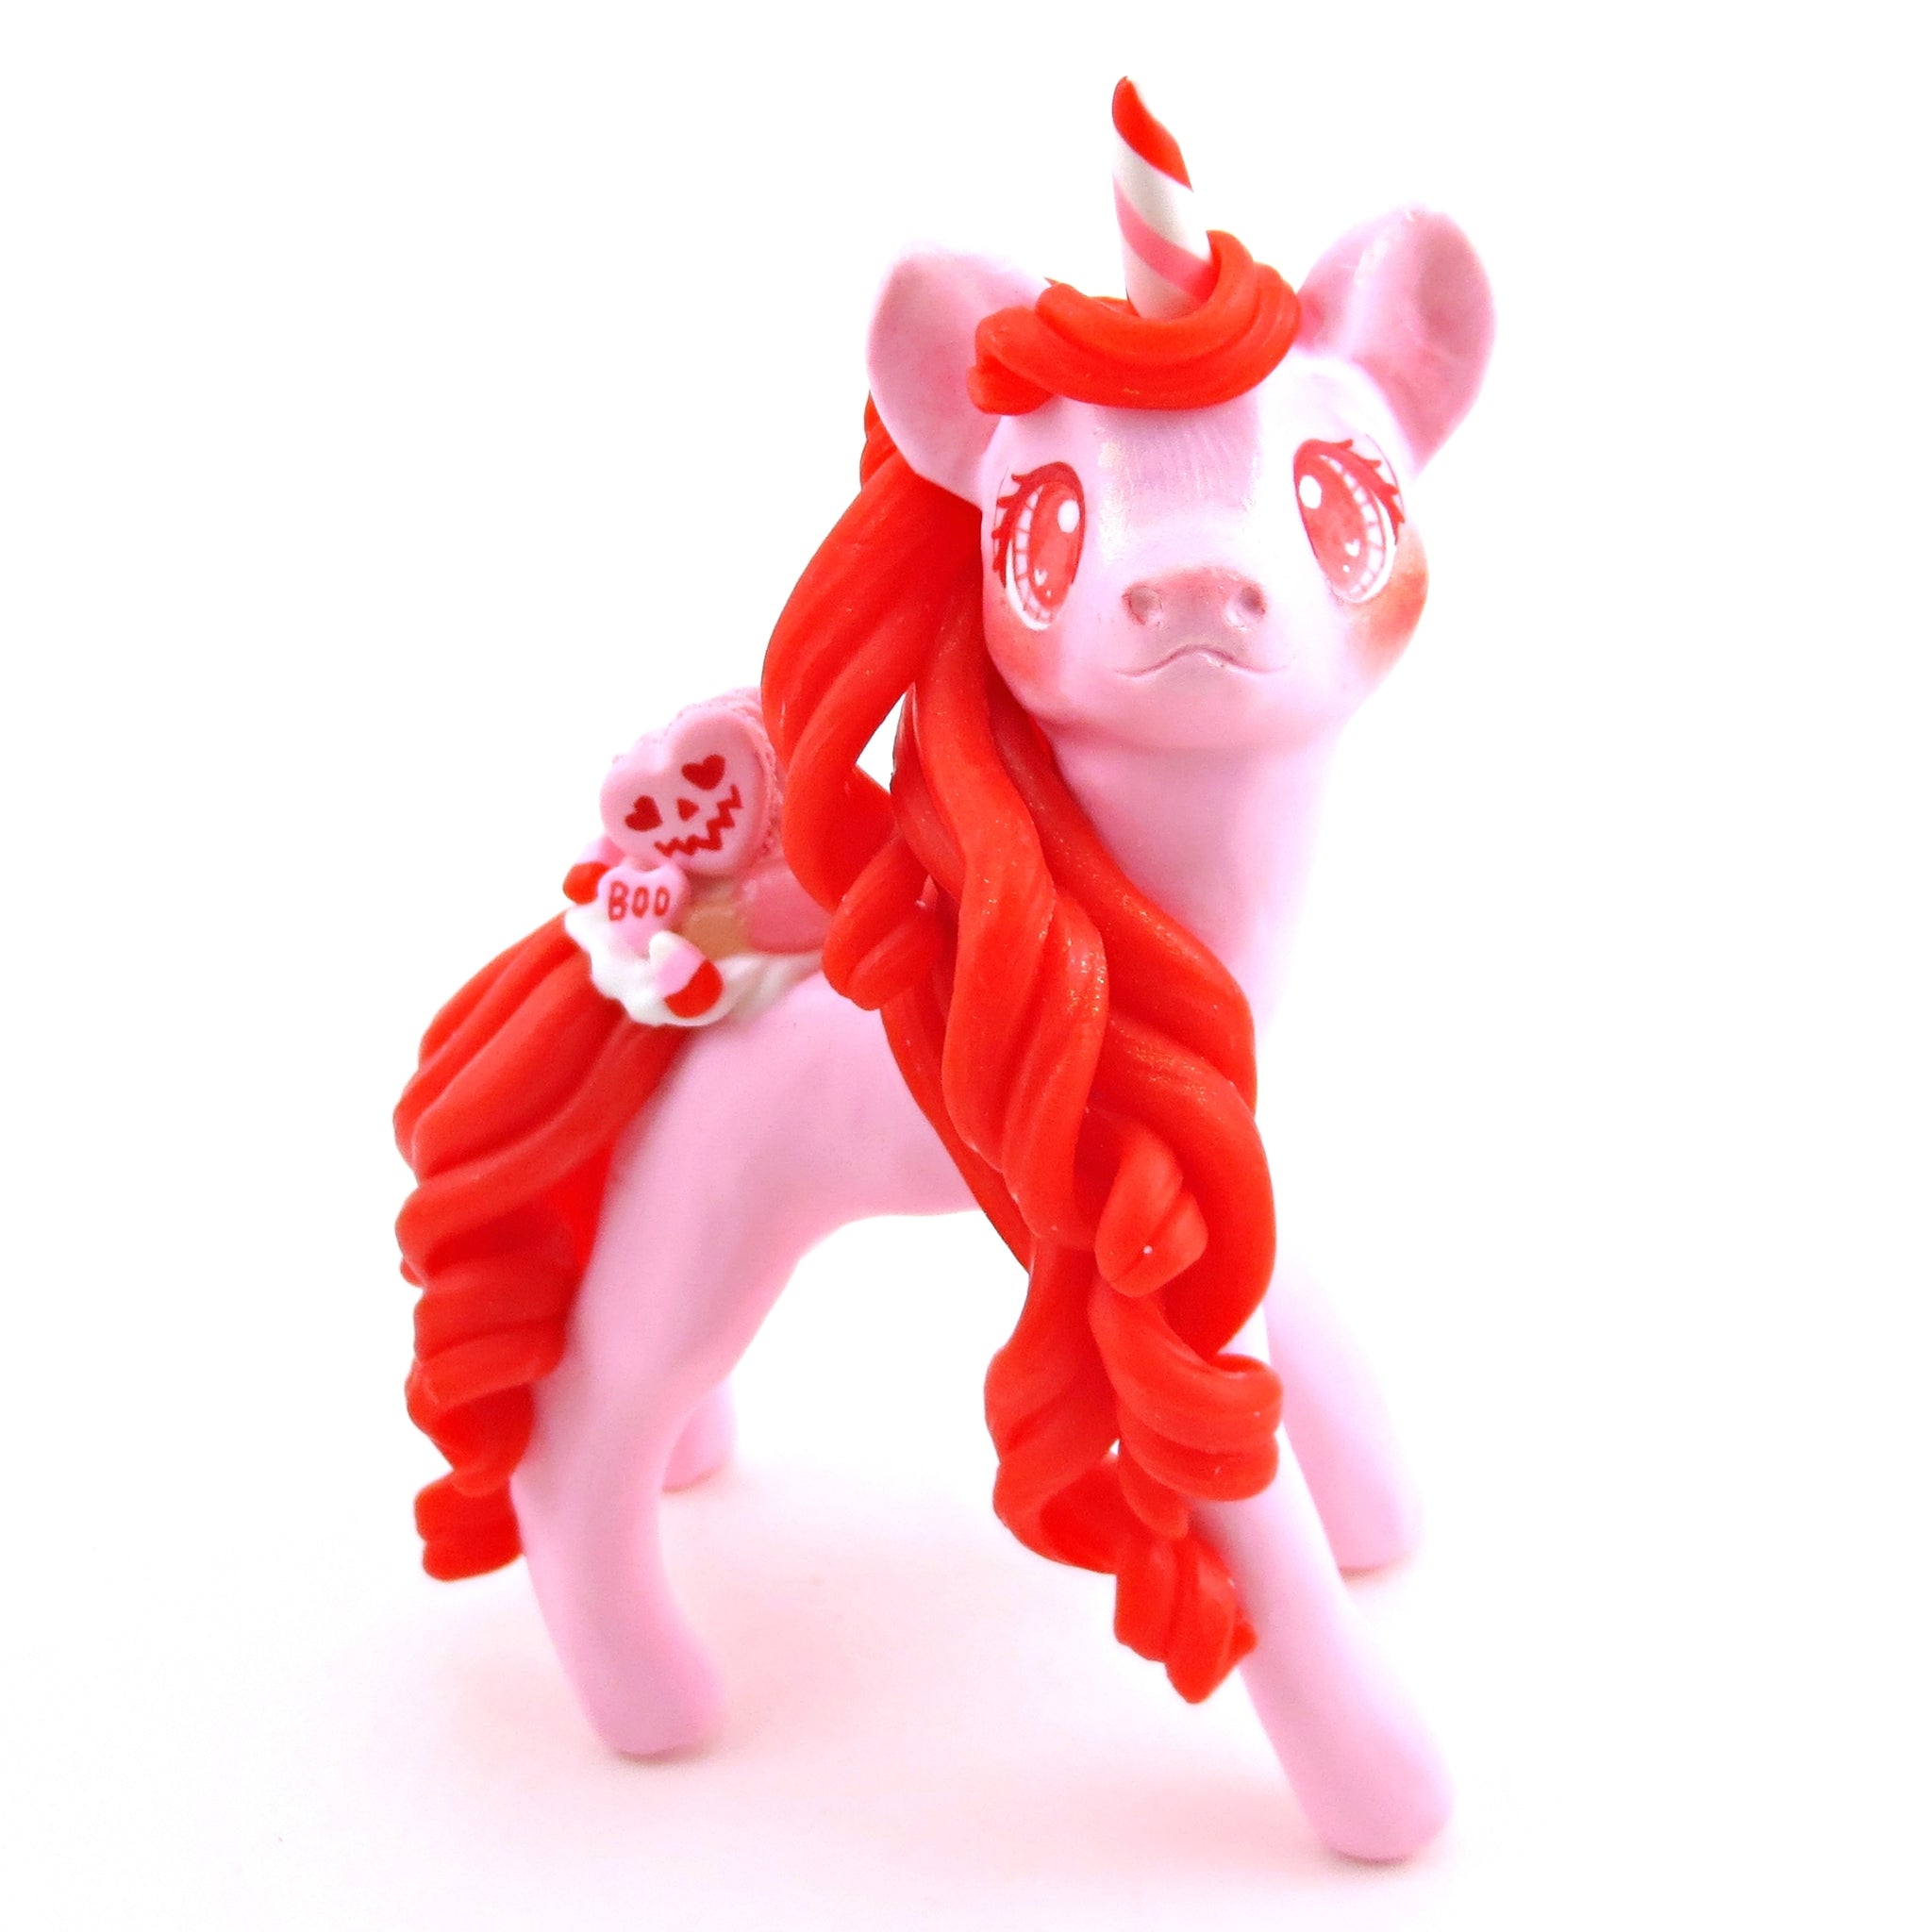 "Valenween" Dessert Unicorn Figurine - Polymer Clay Animals Valentine Collection